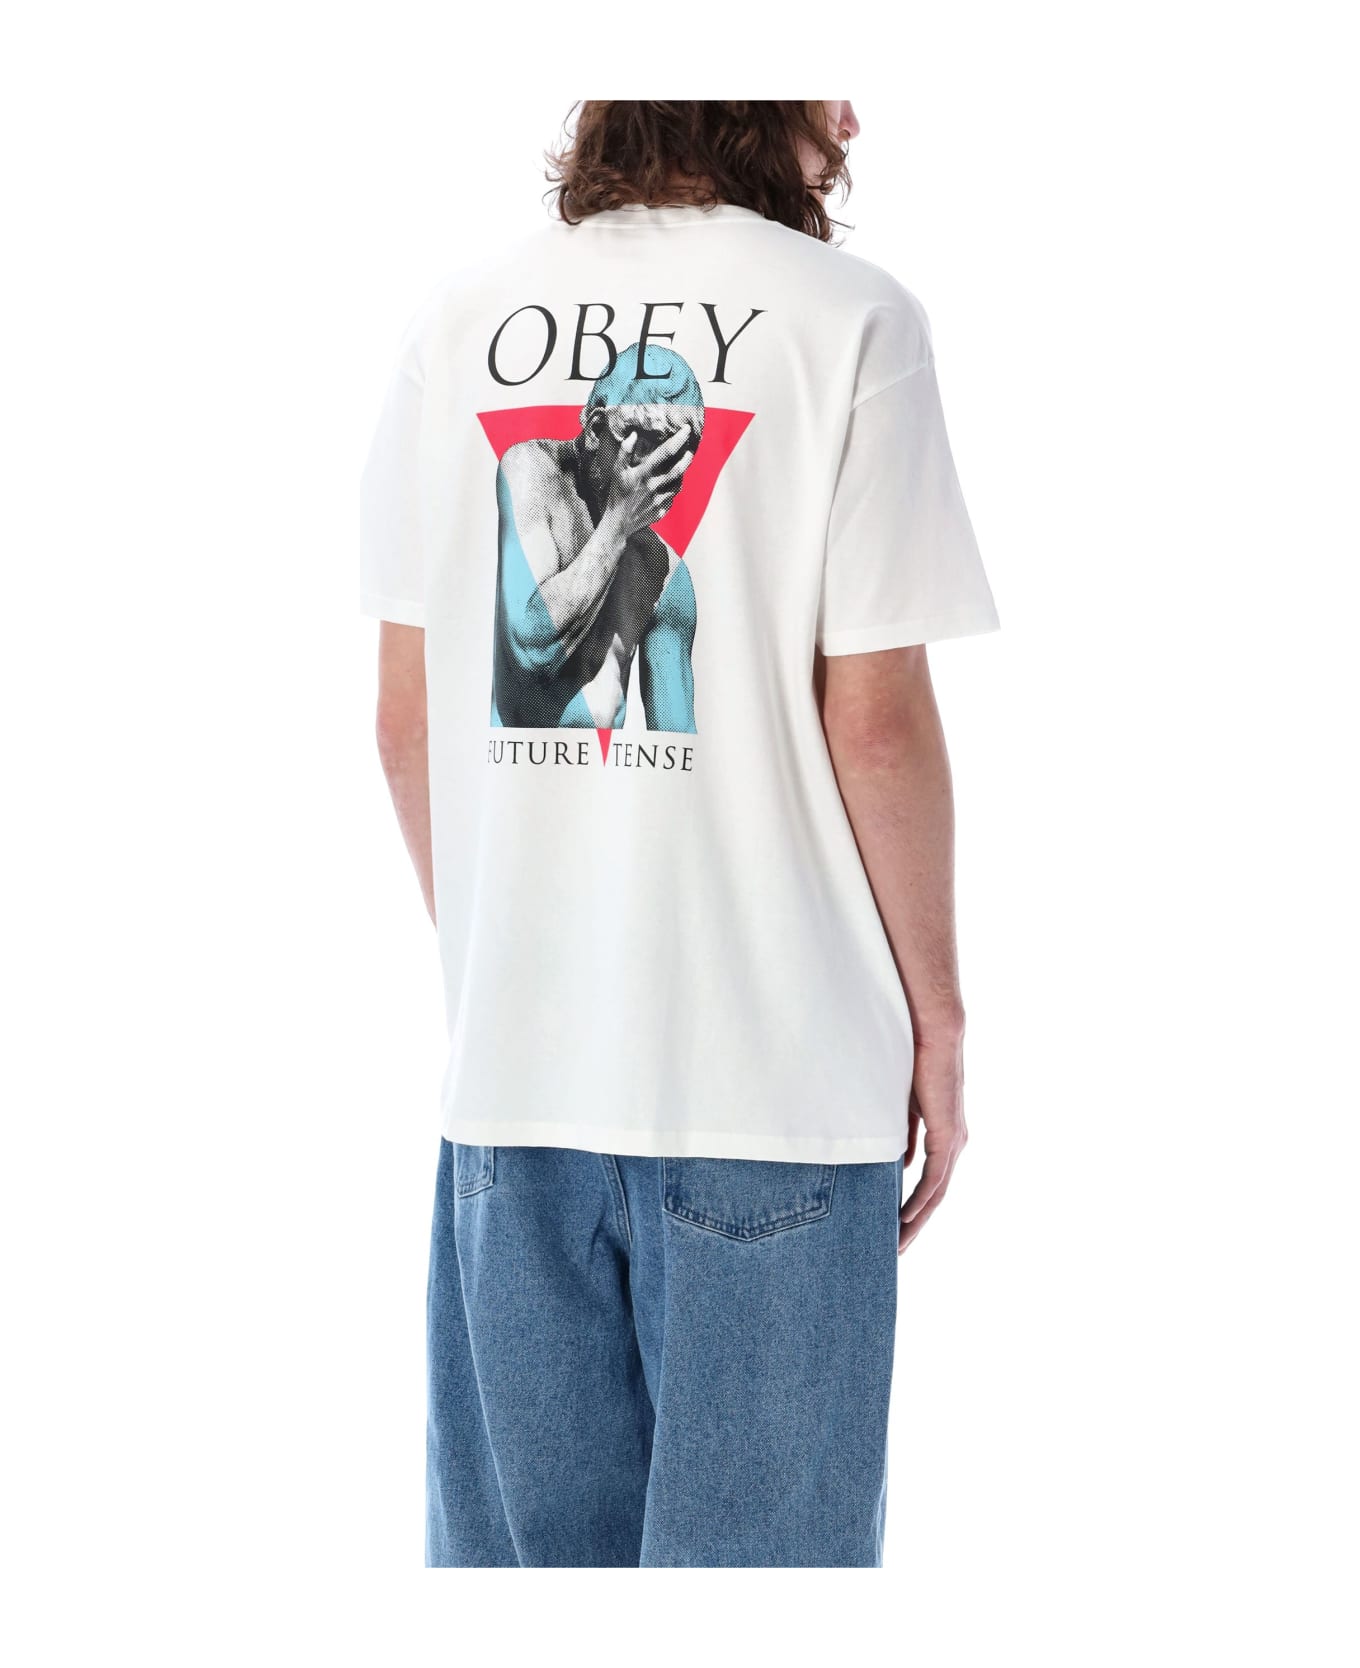 Obey Future Tense T-shirt - WHITE シャツ